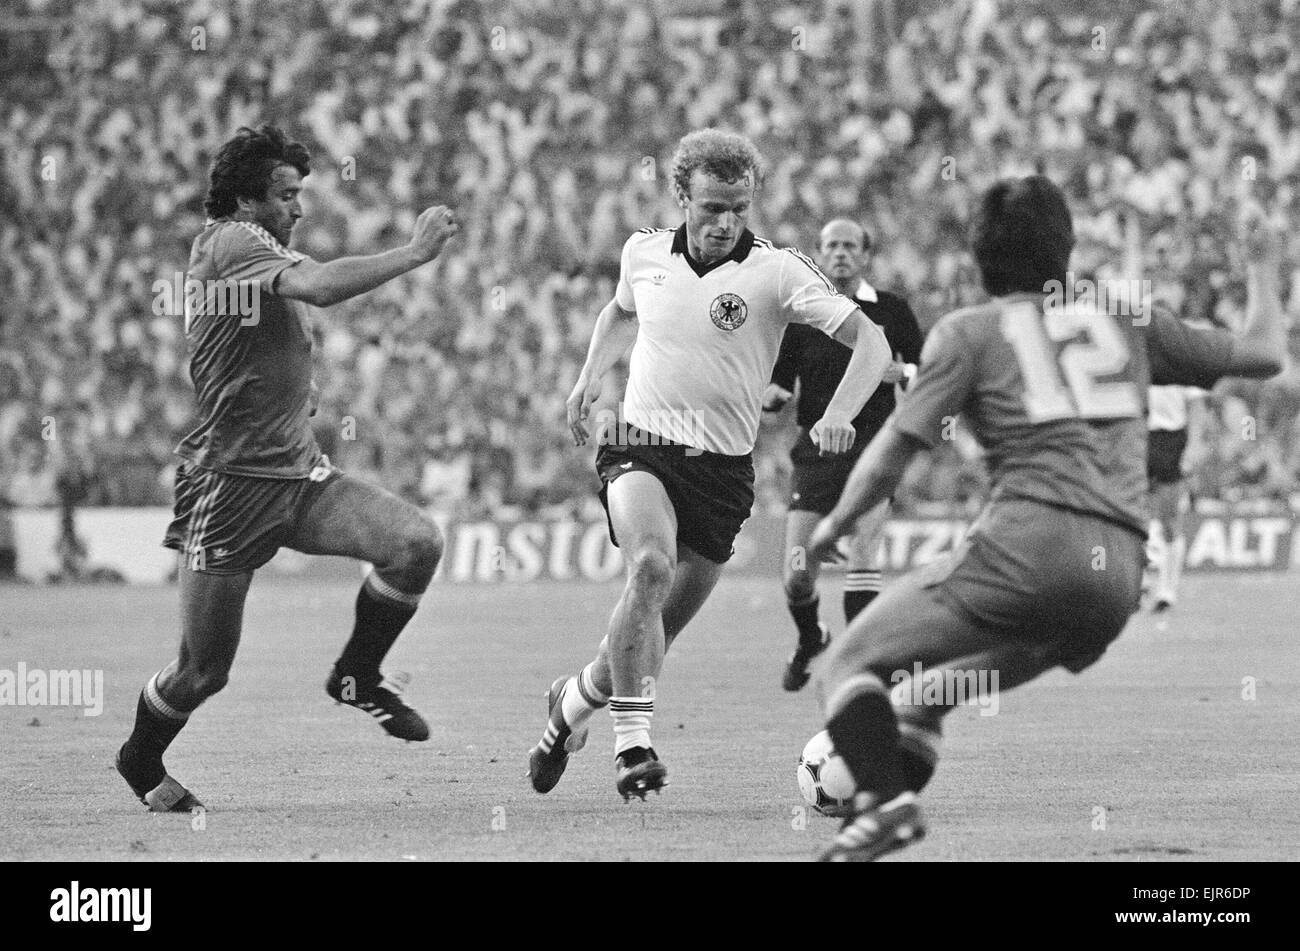 1982 Coppa del Mondo di calcio secondo turno gruppo B corrispondono a Madrid, Spagna. Germania Ovest 2 v Spagna 1. Karl-Heinz Rummenigge sulla sfera. Il 2 luglio 1982. Foto Stock